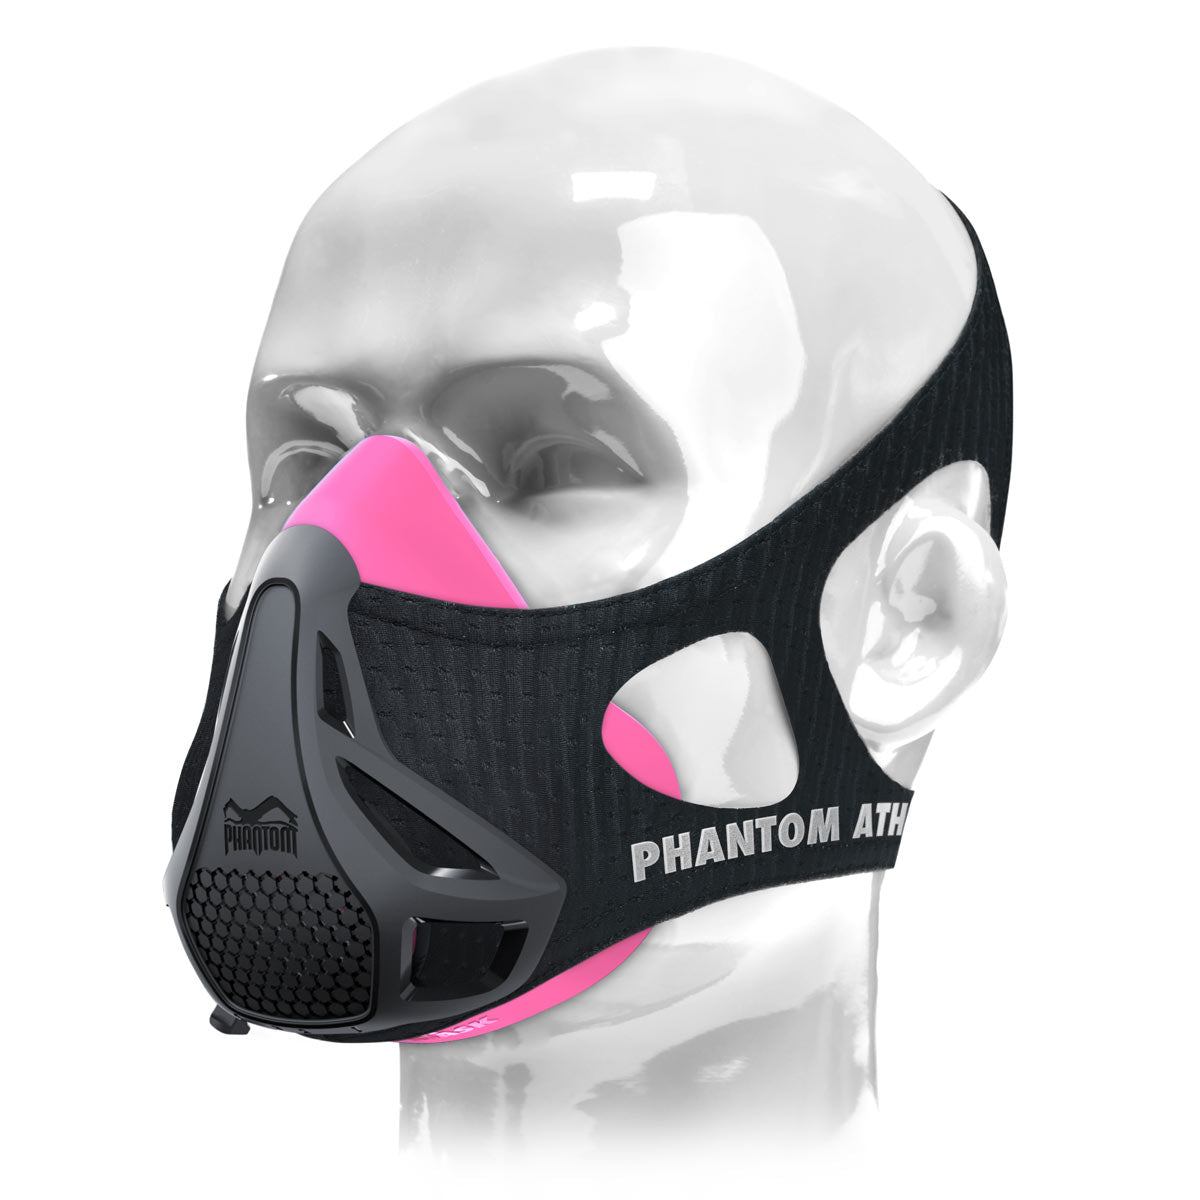 A Phantom edzőmaszk. Az eredeti. Szabadalmaztatva és odaítélve, hogy fitneszét a következő szintre emelje. Most rózsaszín/fekete színben.